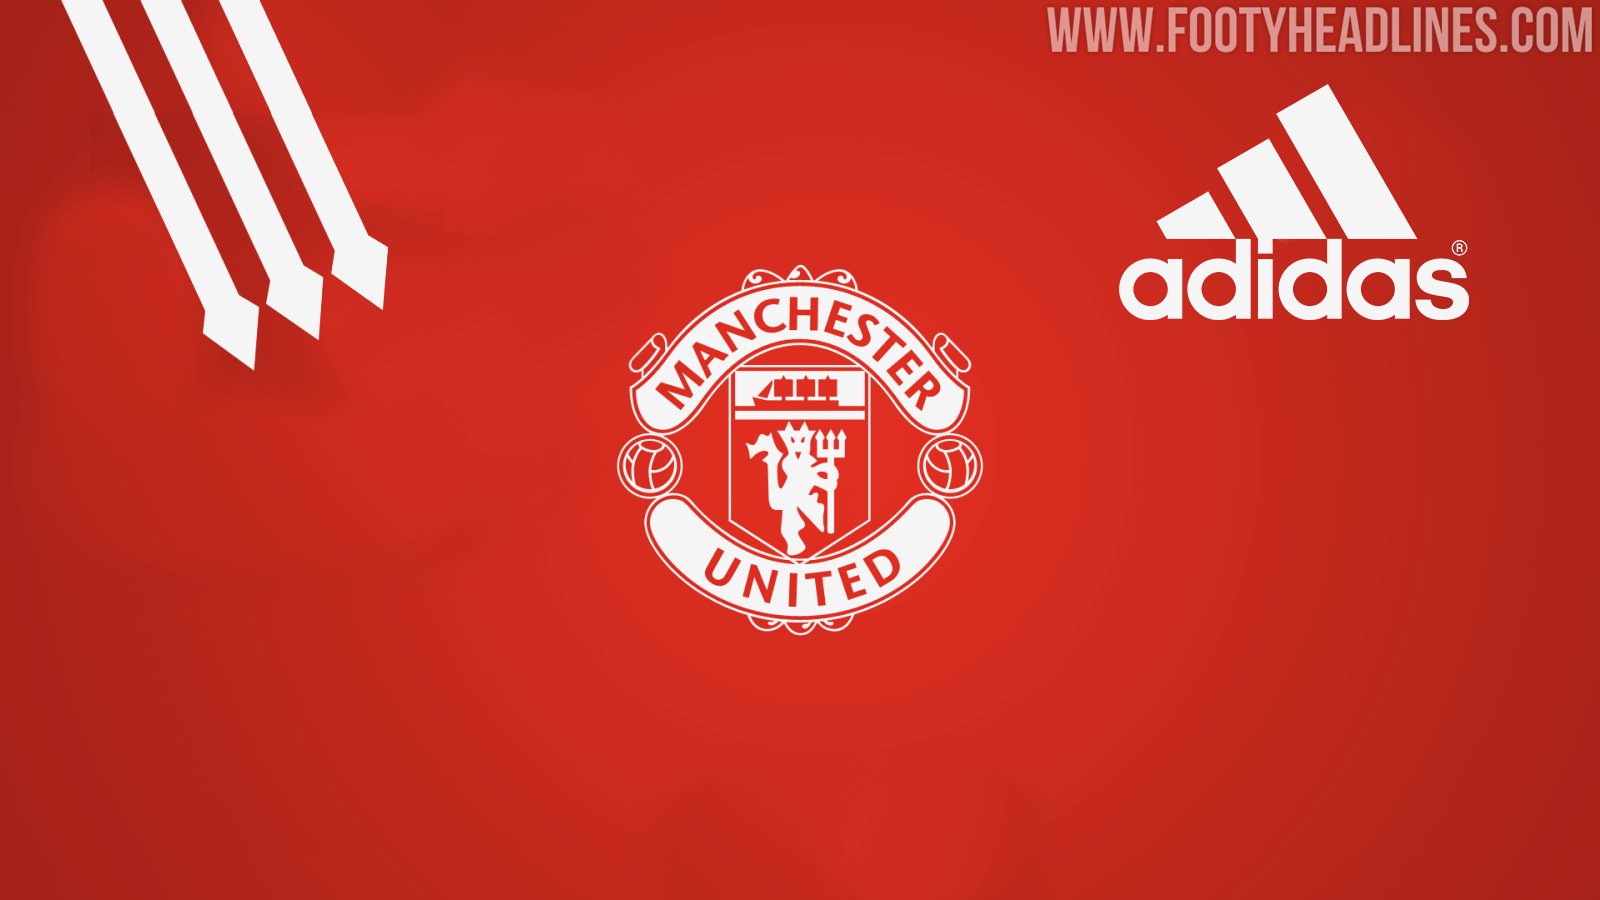 united adidas deal